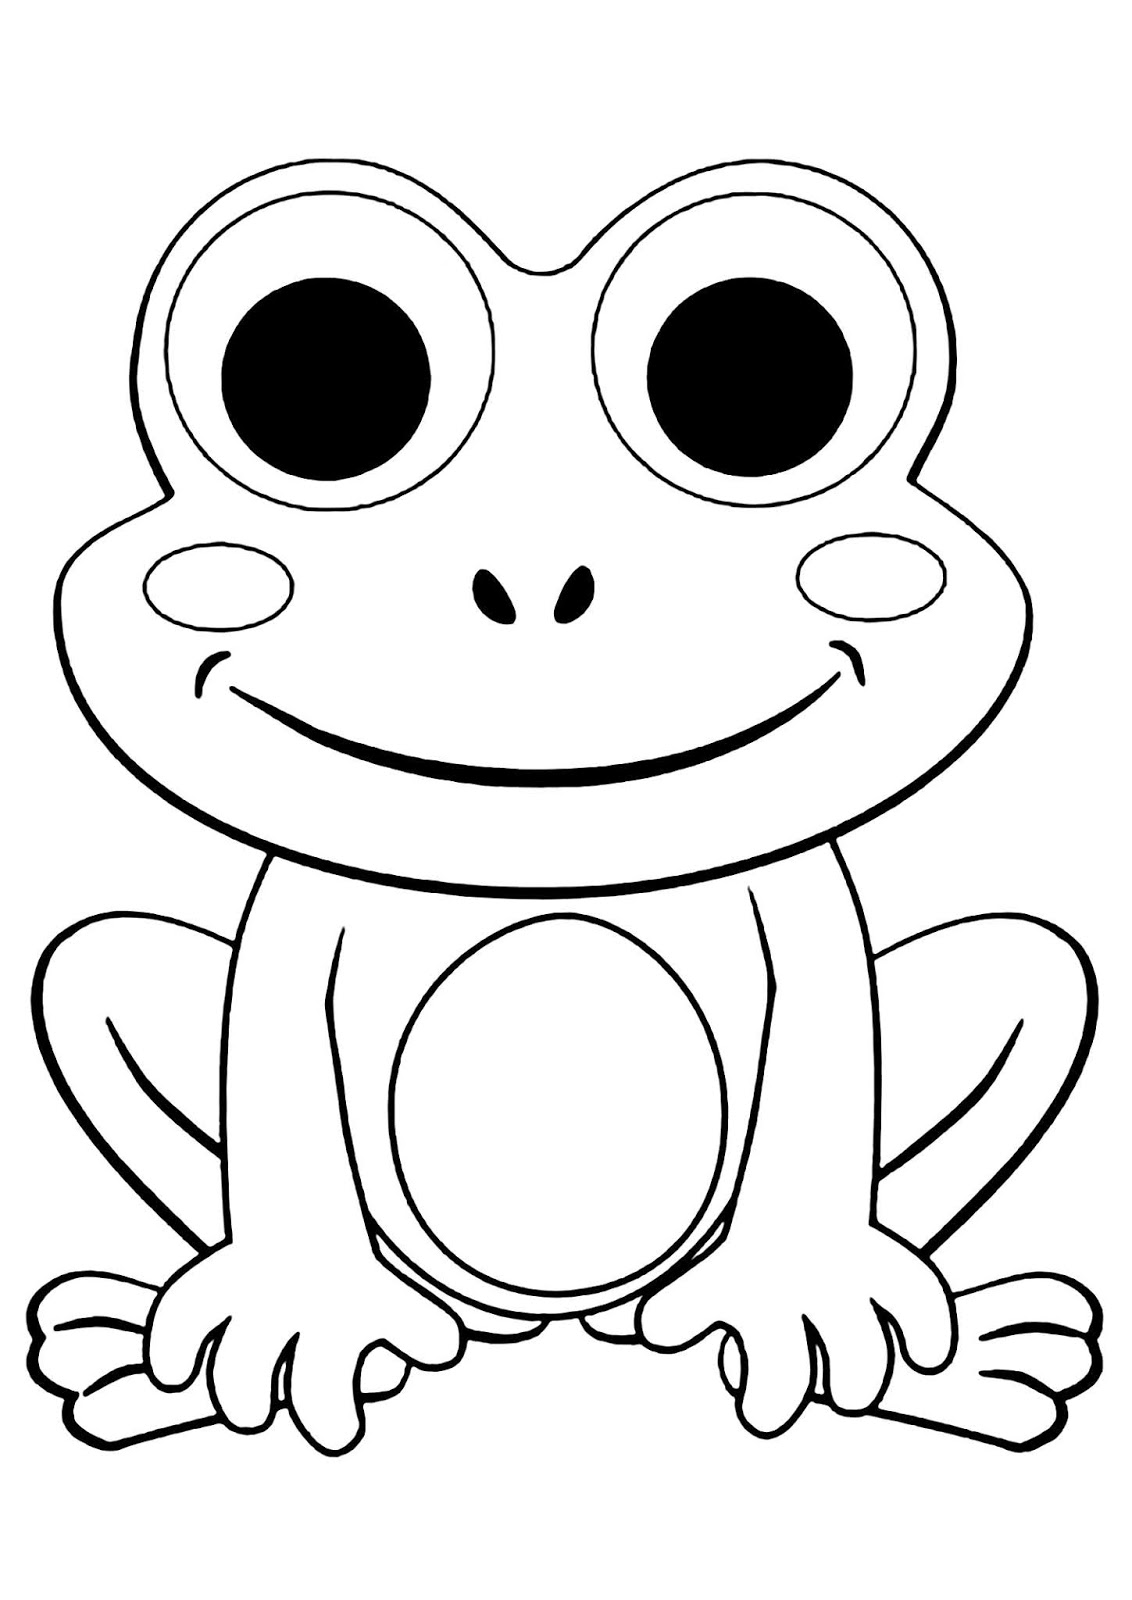 Tranh tô màu chú ếch vẽ đơn giản « in hình này